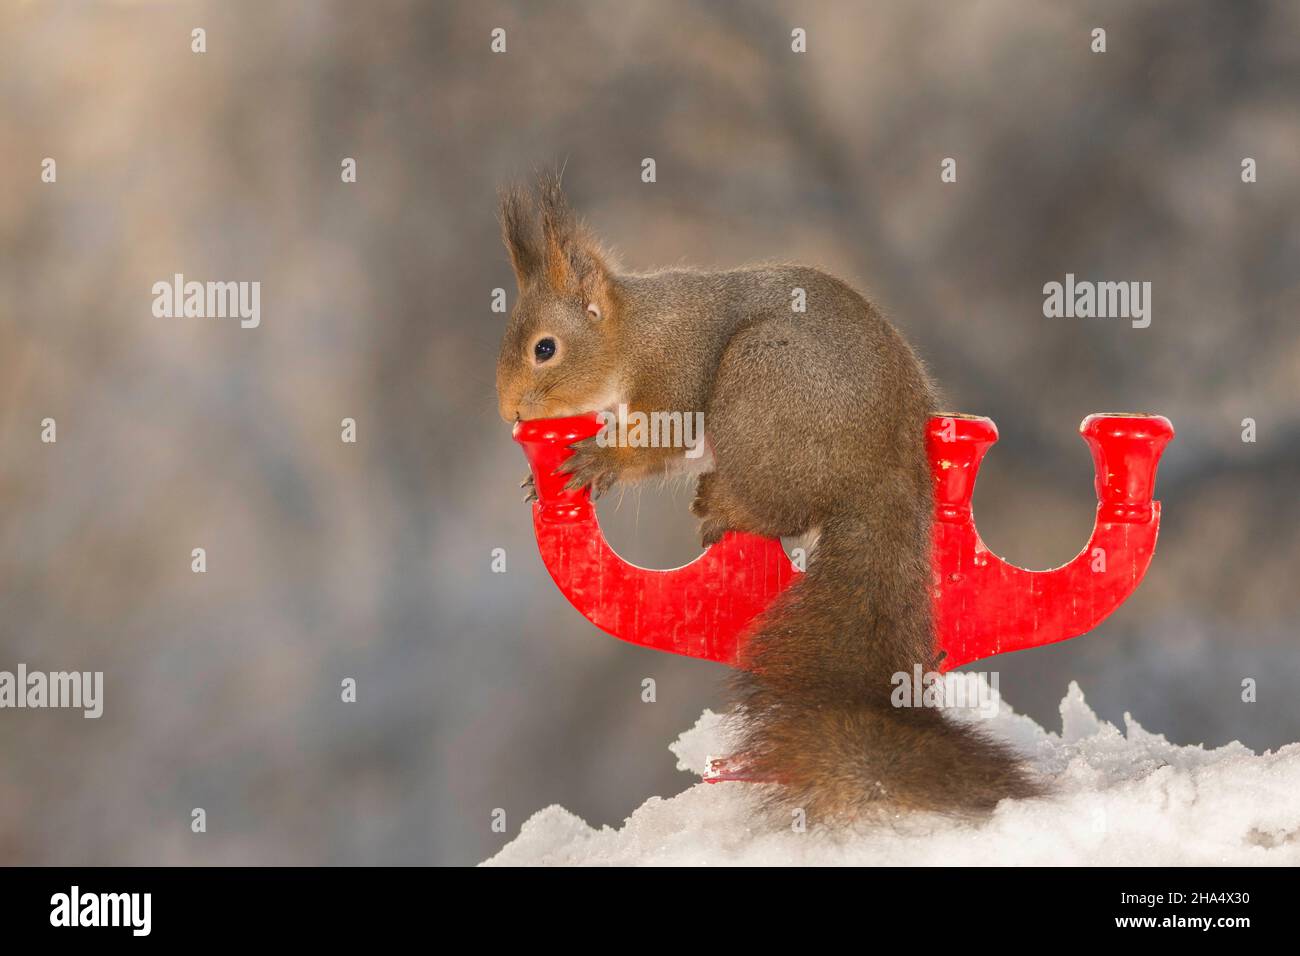 Ardilla roja de pie y sosteniendo un candleholder de pie en la nieve Foto de stock